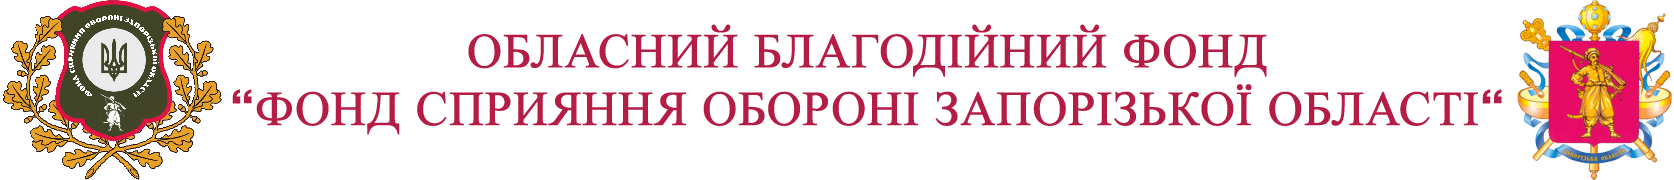 Обласний благодійний фонд "Фонд сприяння обороні Запорізької області"